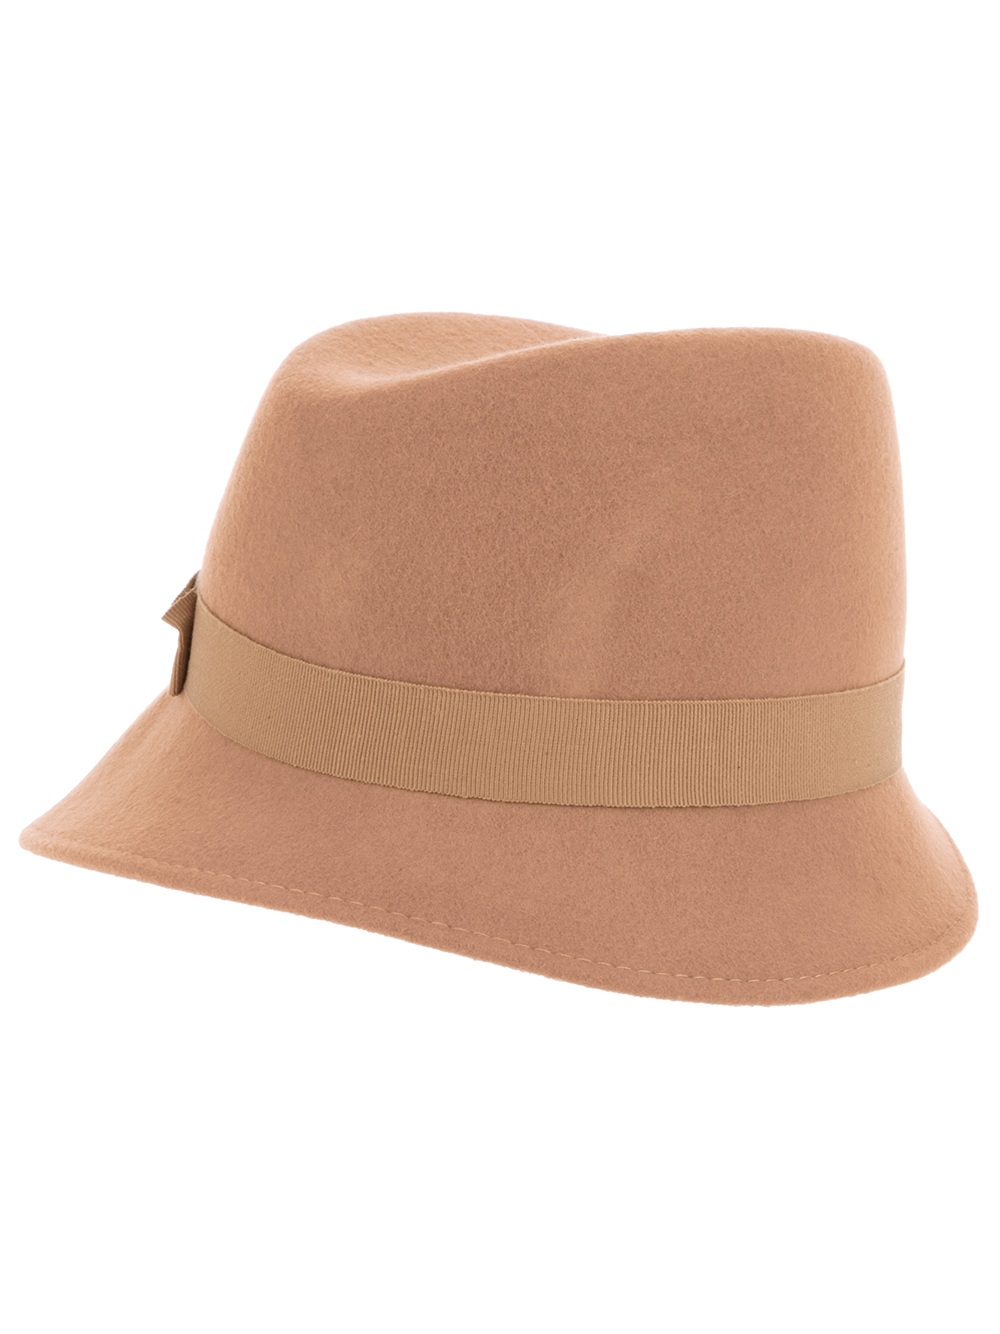 Le chapeau - R$350